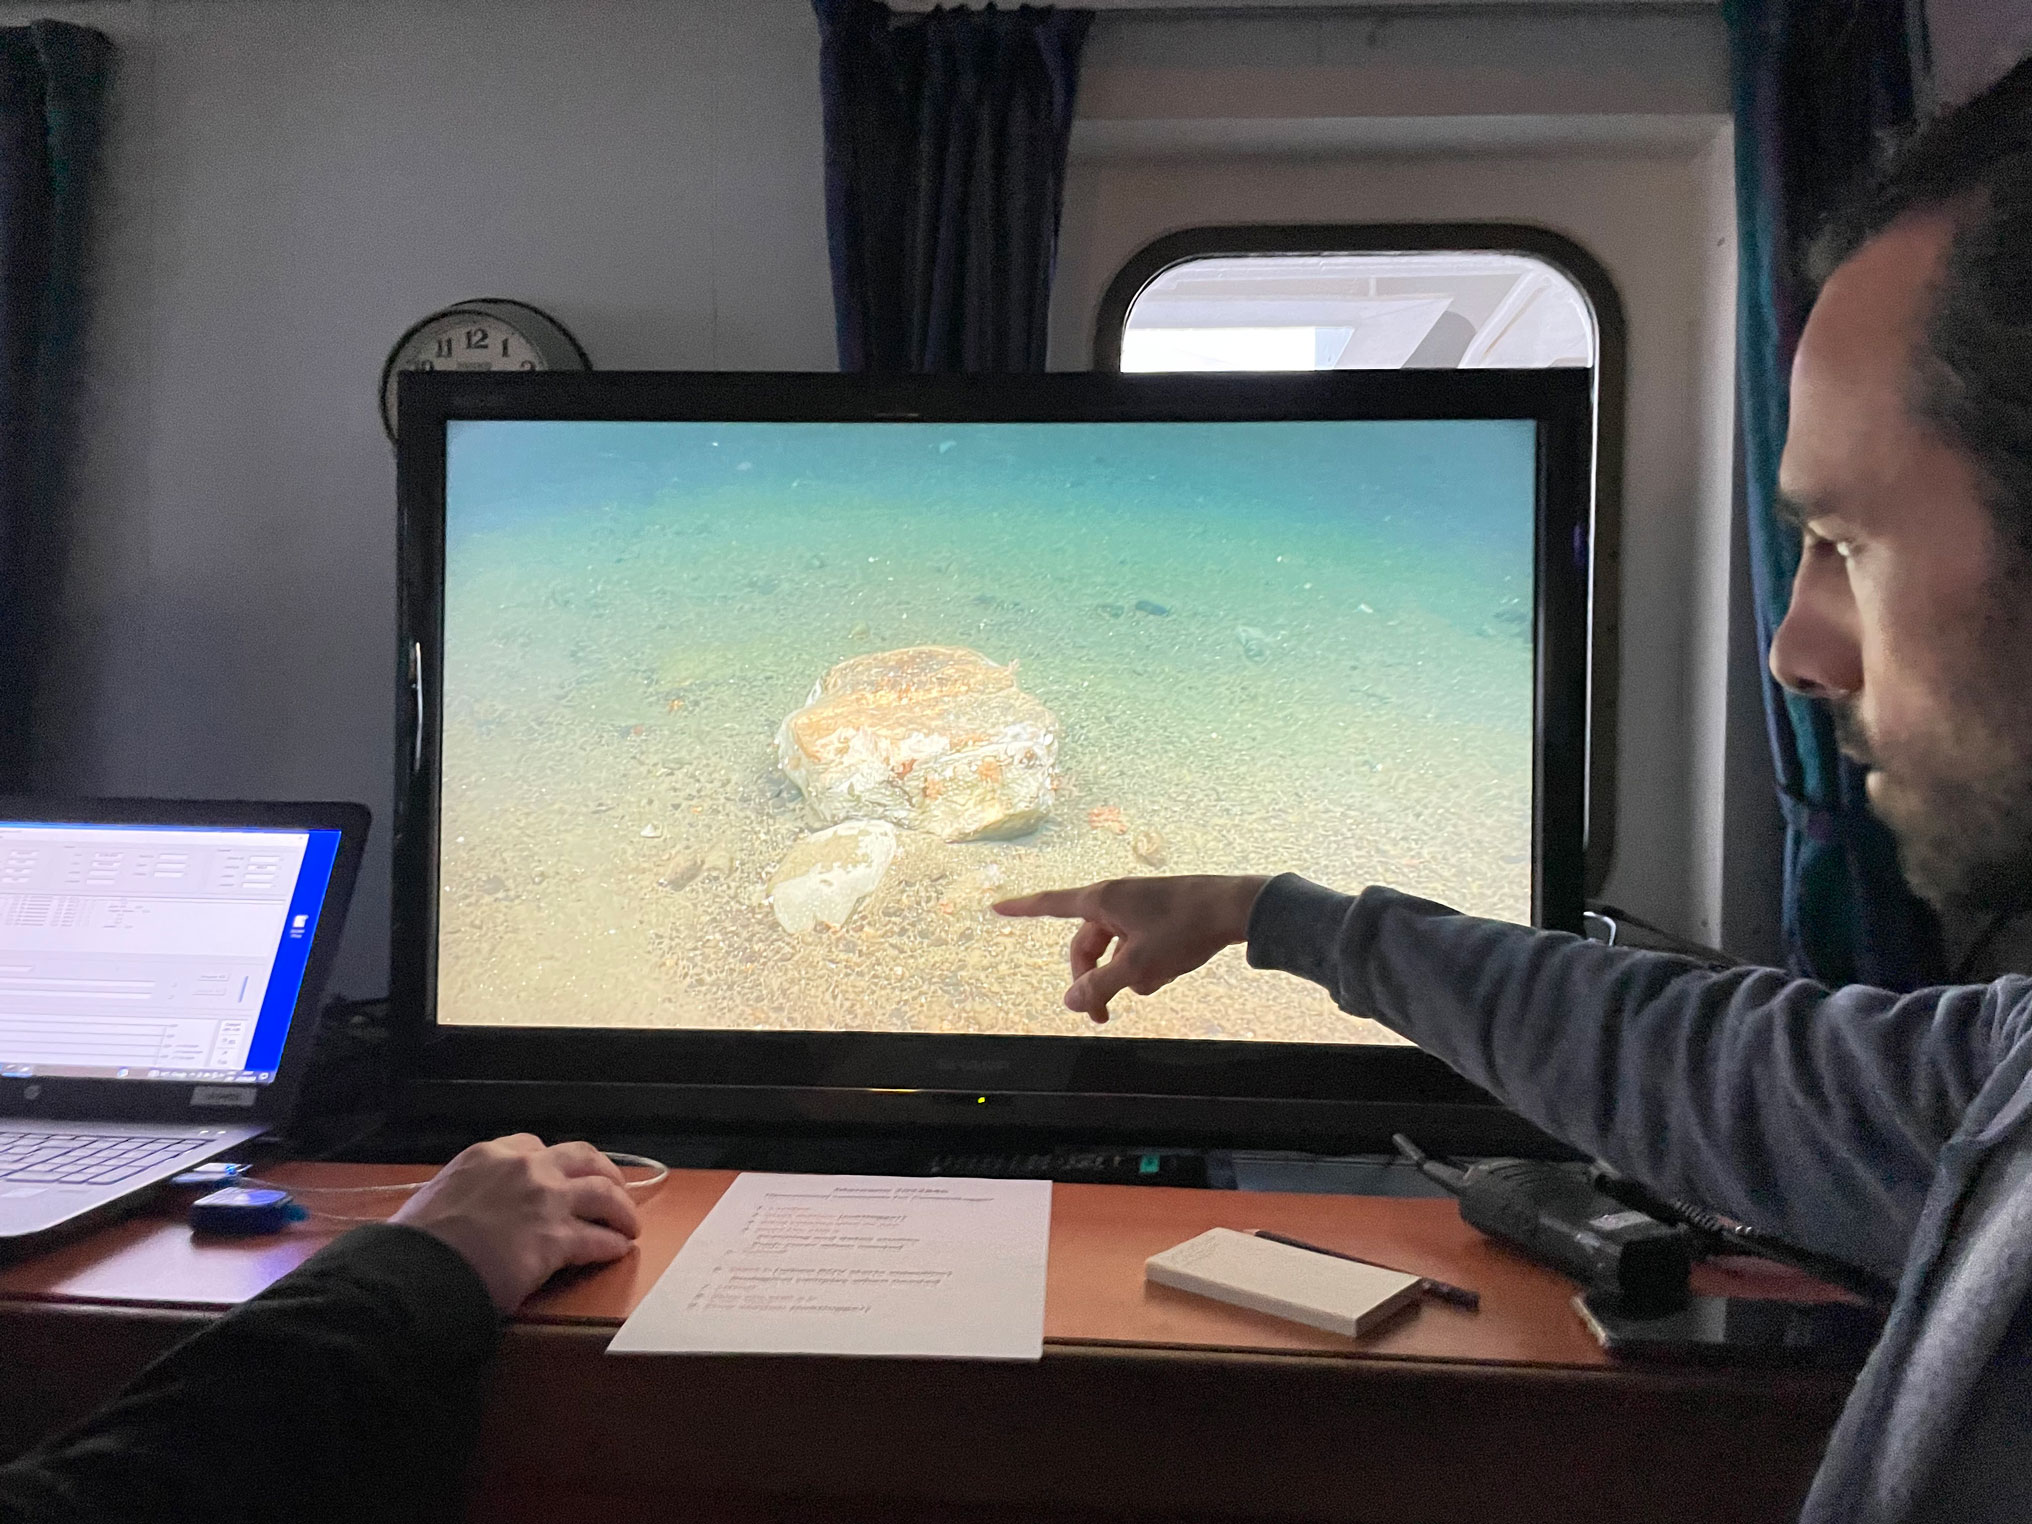 Bilde av forsker som peker på en stein som har dukket opp på tv-skjermen som viser bildene fra havbunnen.